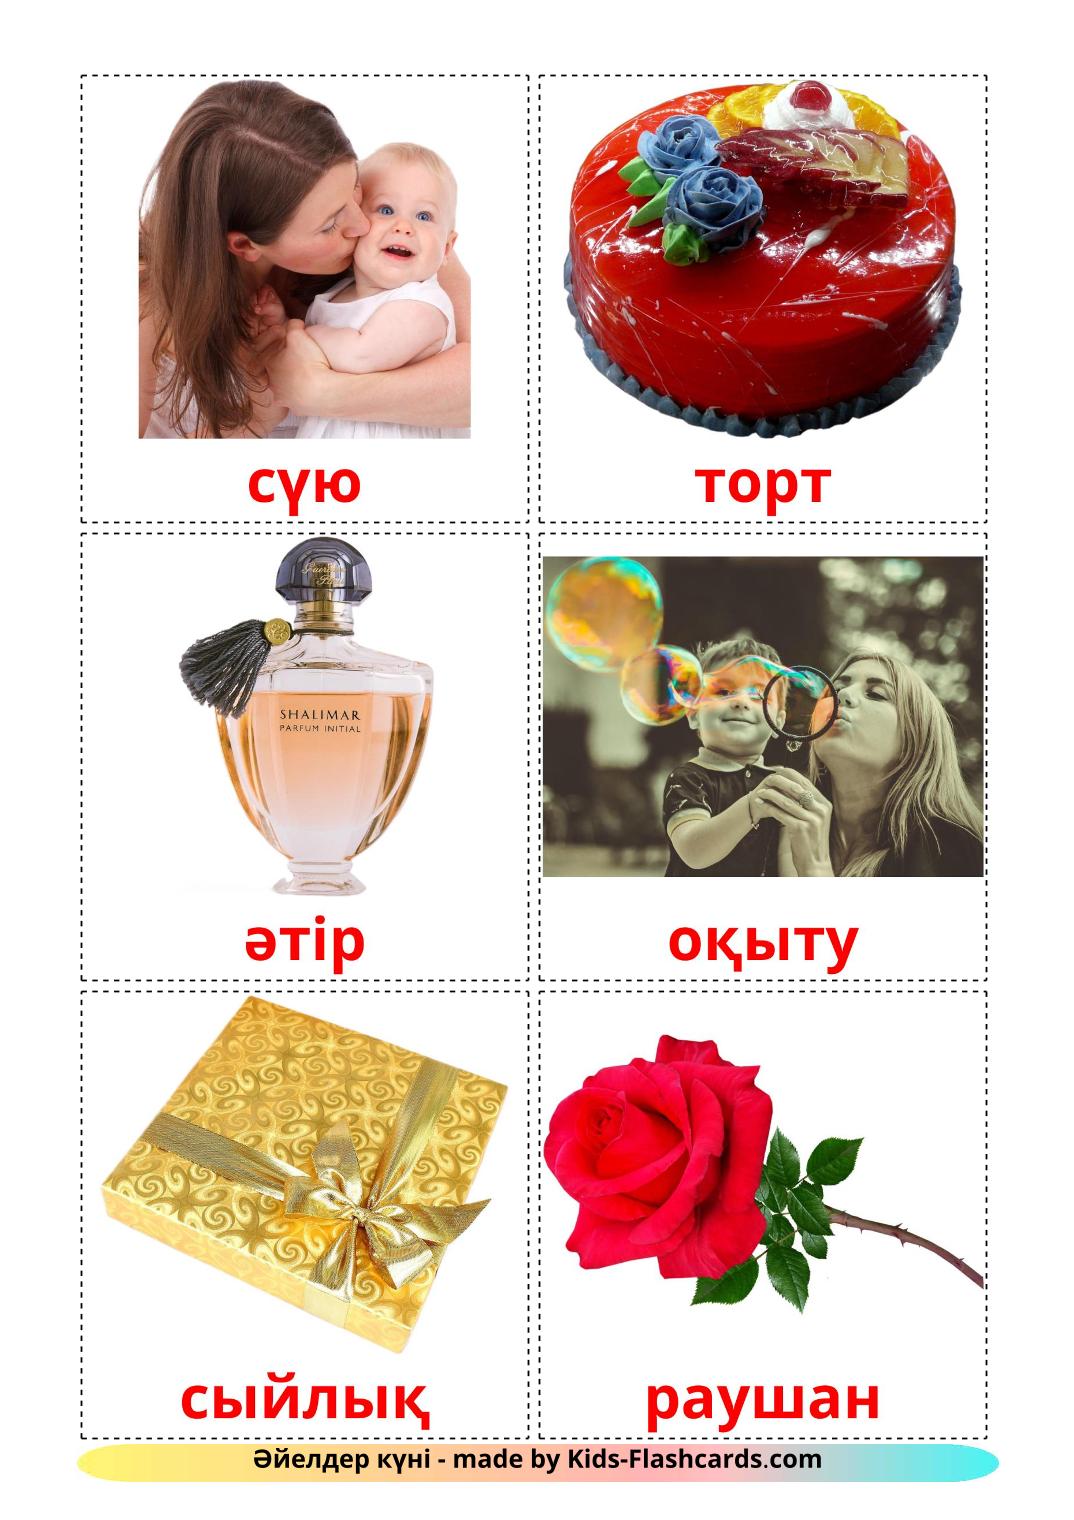 Dia das Mães - 25 Flashcards kazakhes gratuitos para impressão